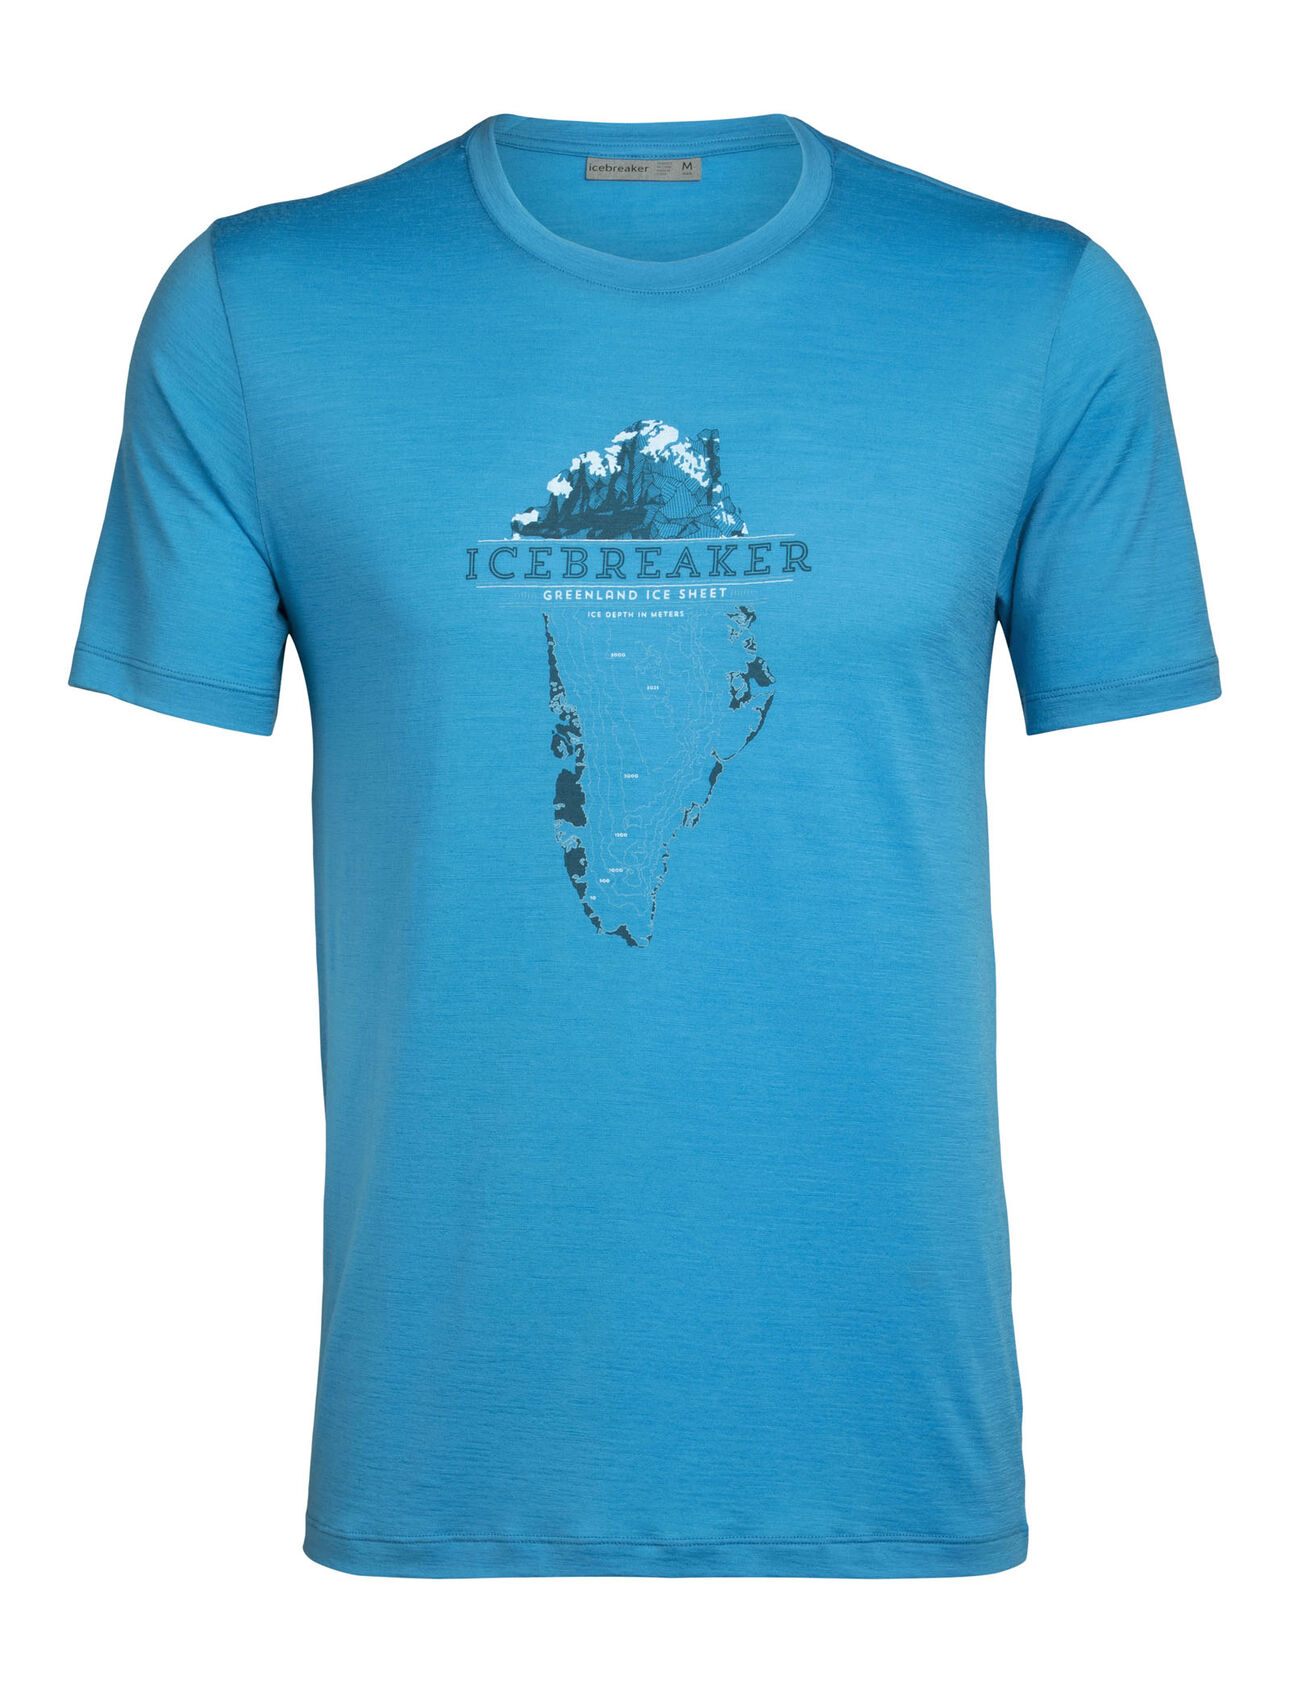 Merino Tech Lite T-Shirt Greenland Crest Herren Unser vielseitigstes Tech Tee aus atmungsaktiver, geruchsabweisender Merinowolle mit etwas Stretch. Der Künstler Scott Elser stellt die Tiefe des grönländischen Eisschilds dar, der 80% der Fläche von Grönland bedeckt und 8% des Frischwassers der Erde ausmacht.  